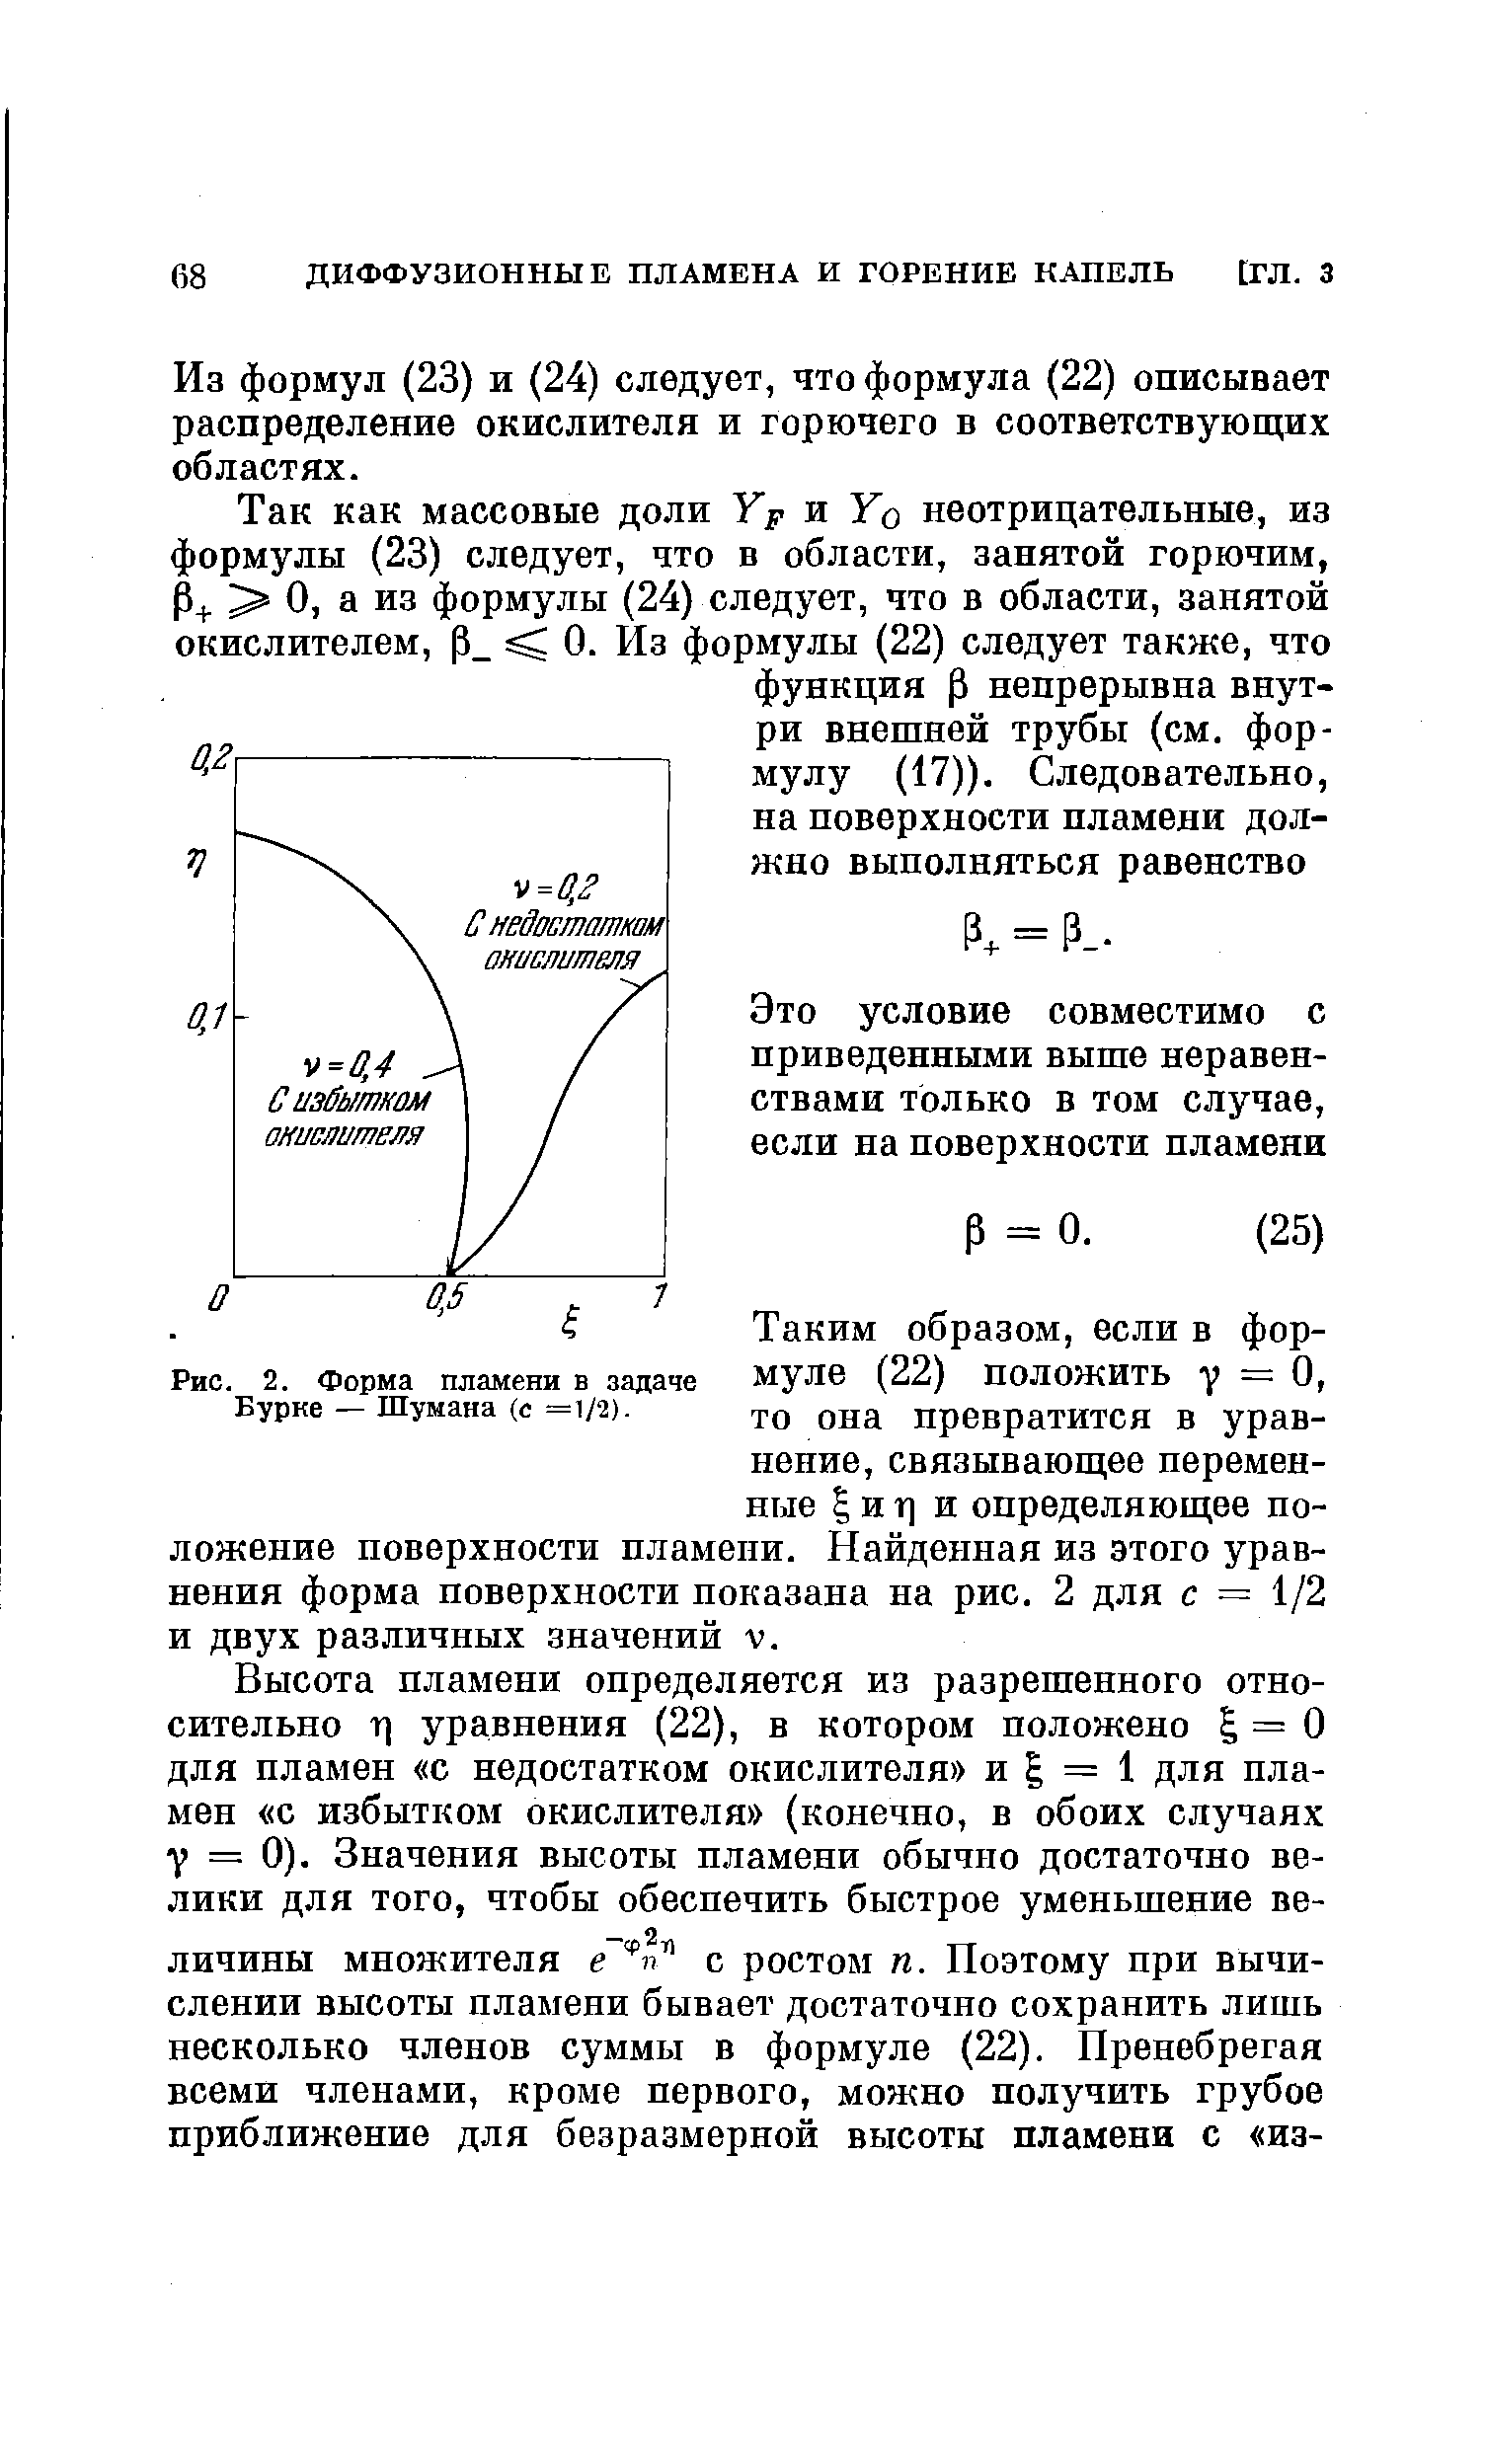 Из формул (23) и (24) следует, что формула (22) описывает распределение окислителя и горючего в соответствующих областях.